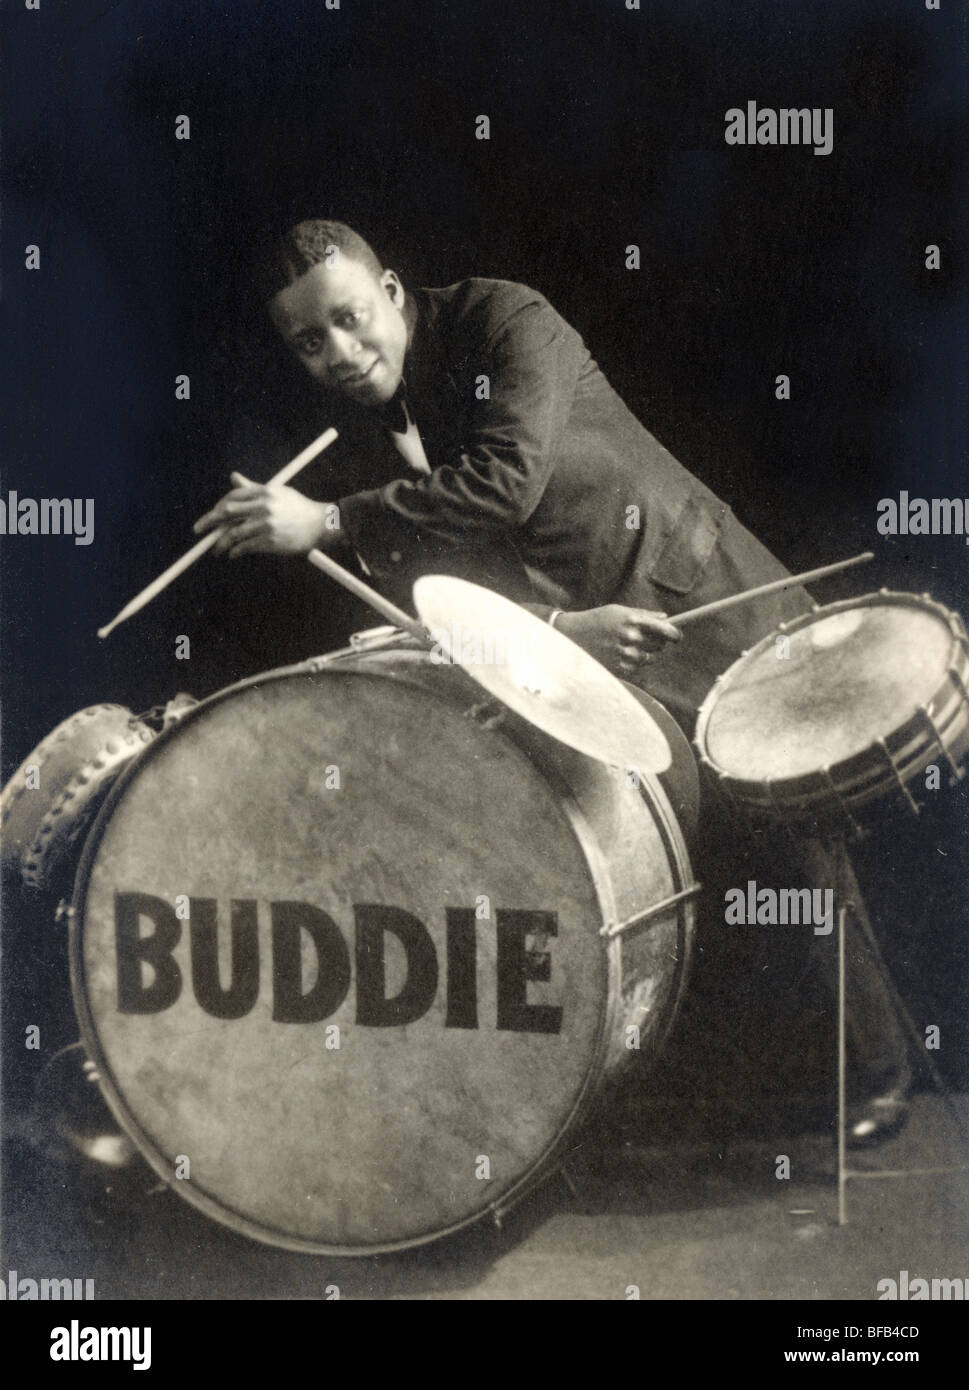 Buddie the Jazz Drummer Stock Photo